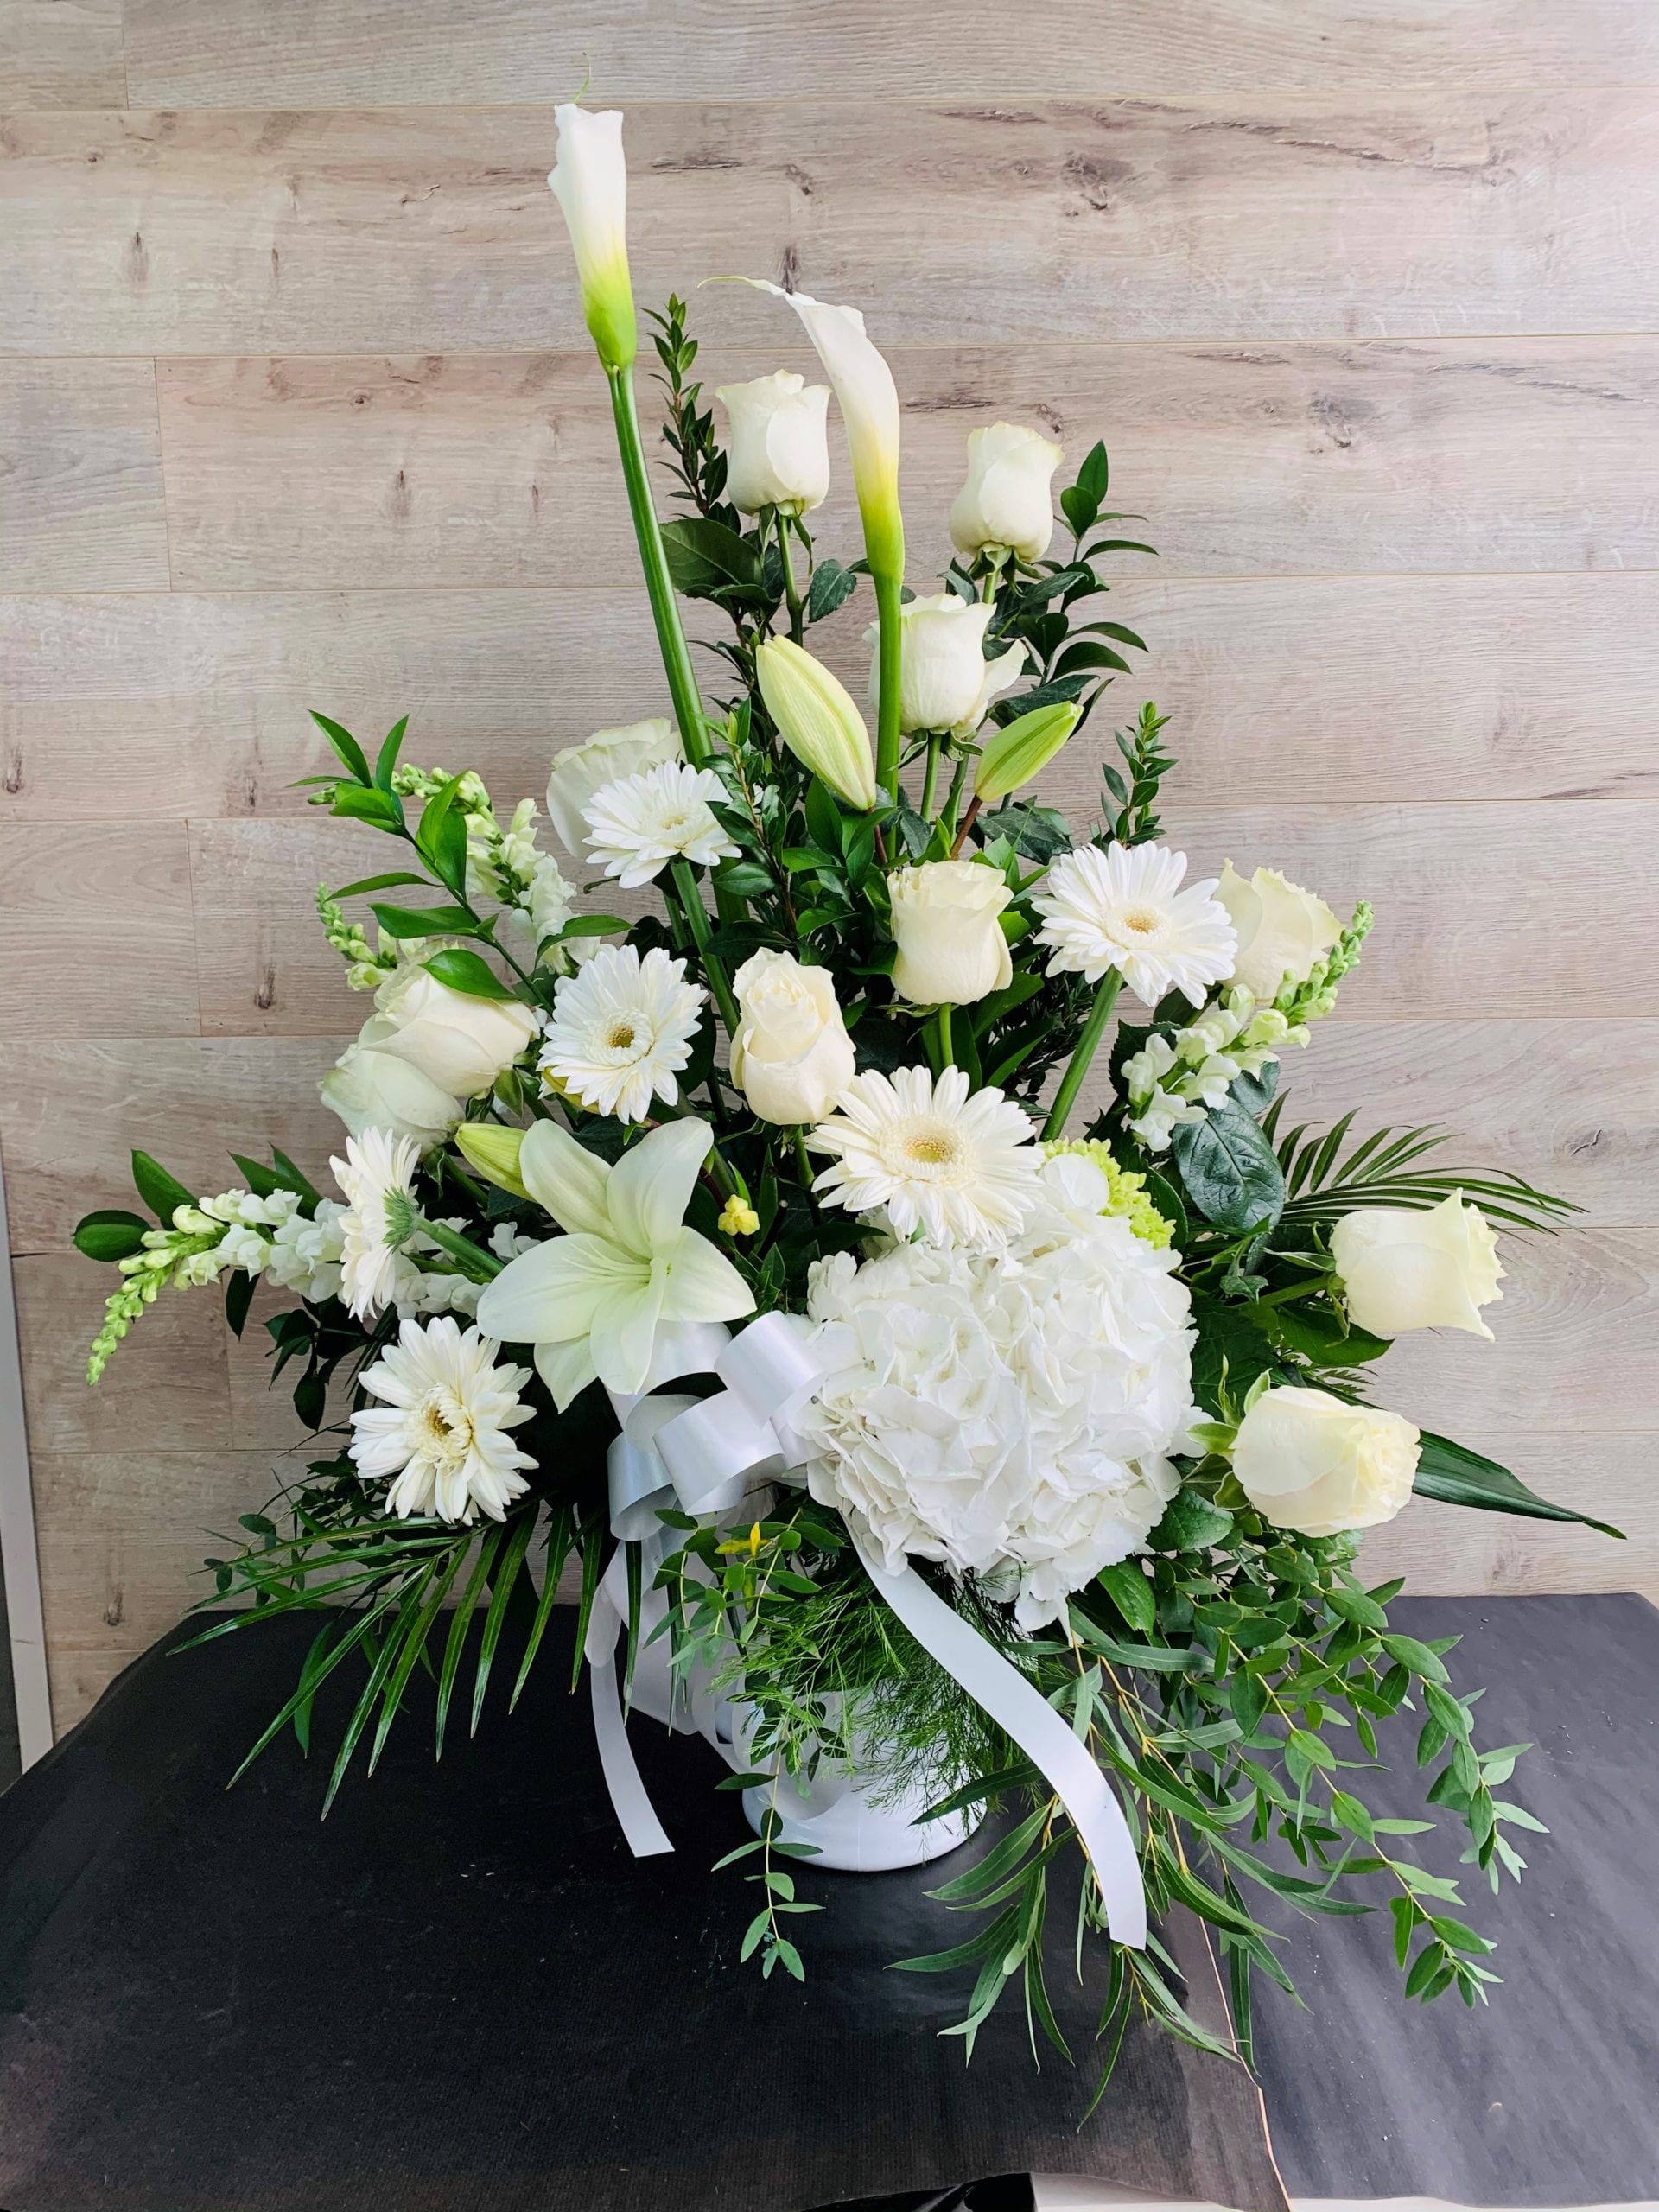 Funeral Flower Guide: Choosing Funeral Flowers